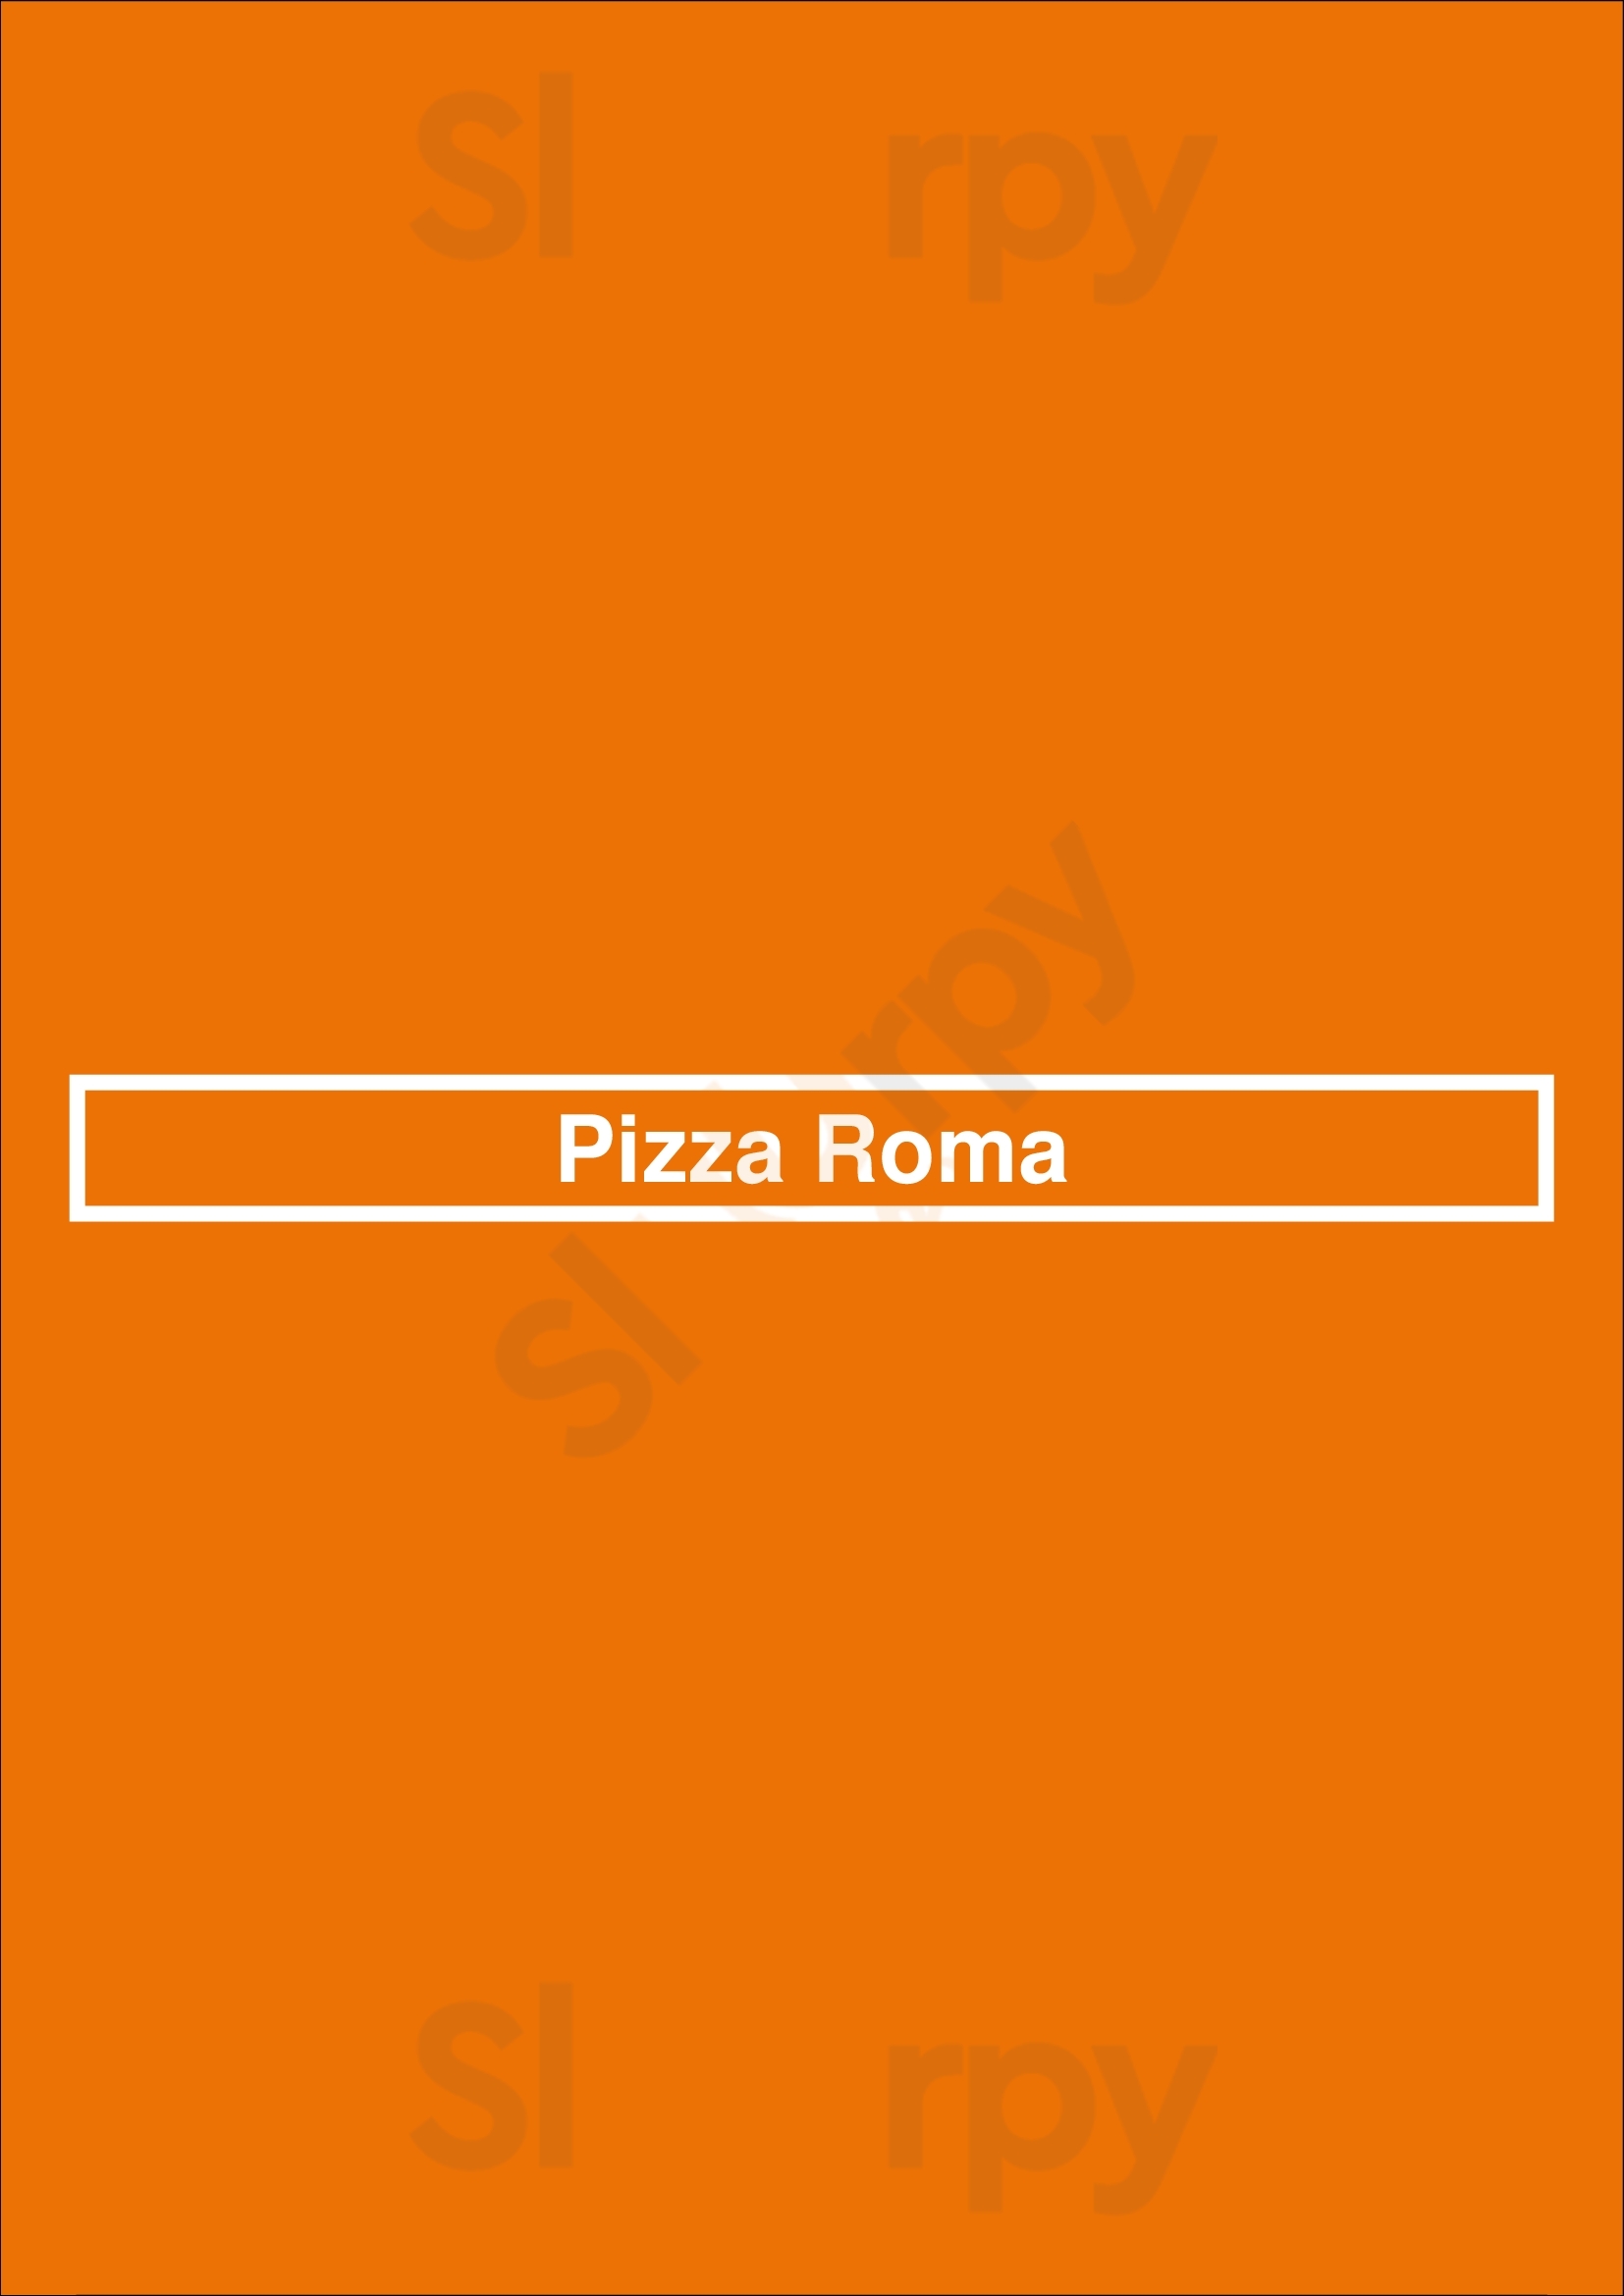 Pizza Roma Lincoln Menu - 1